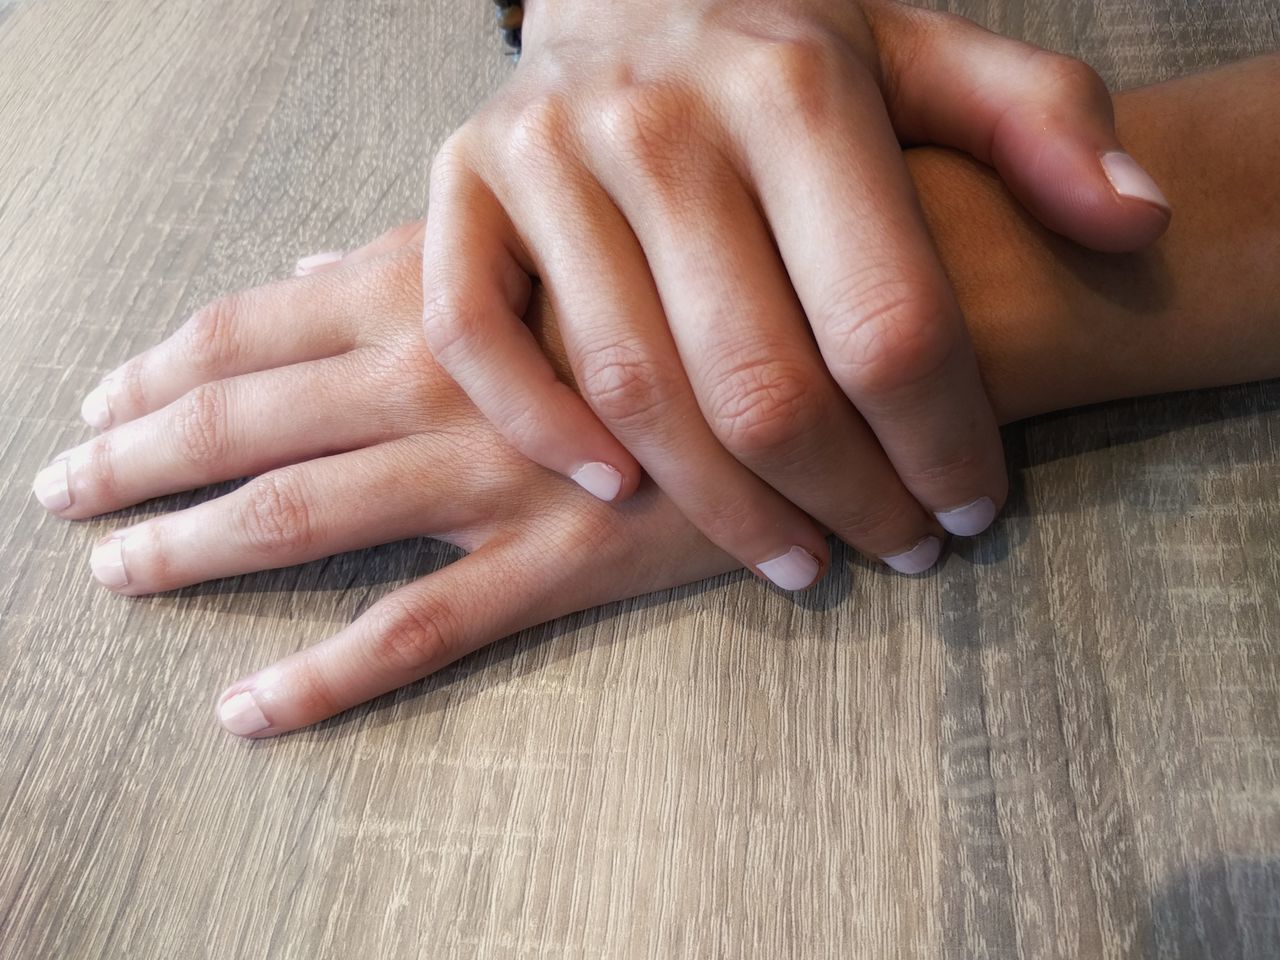 Caucasian hands